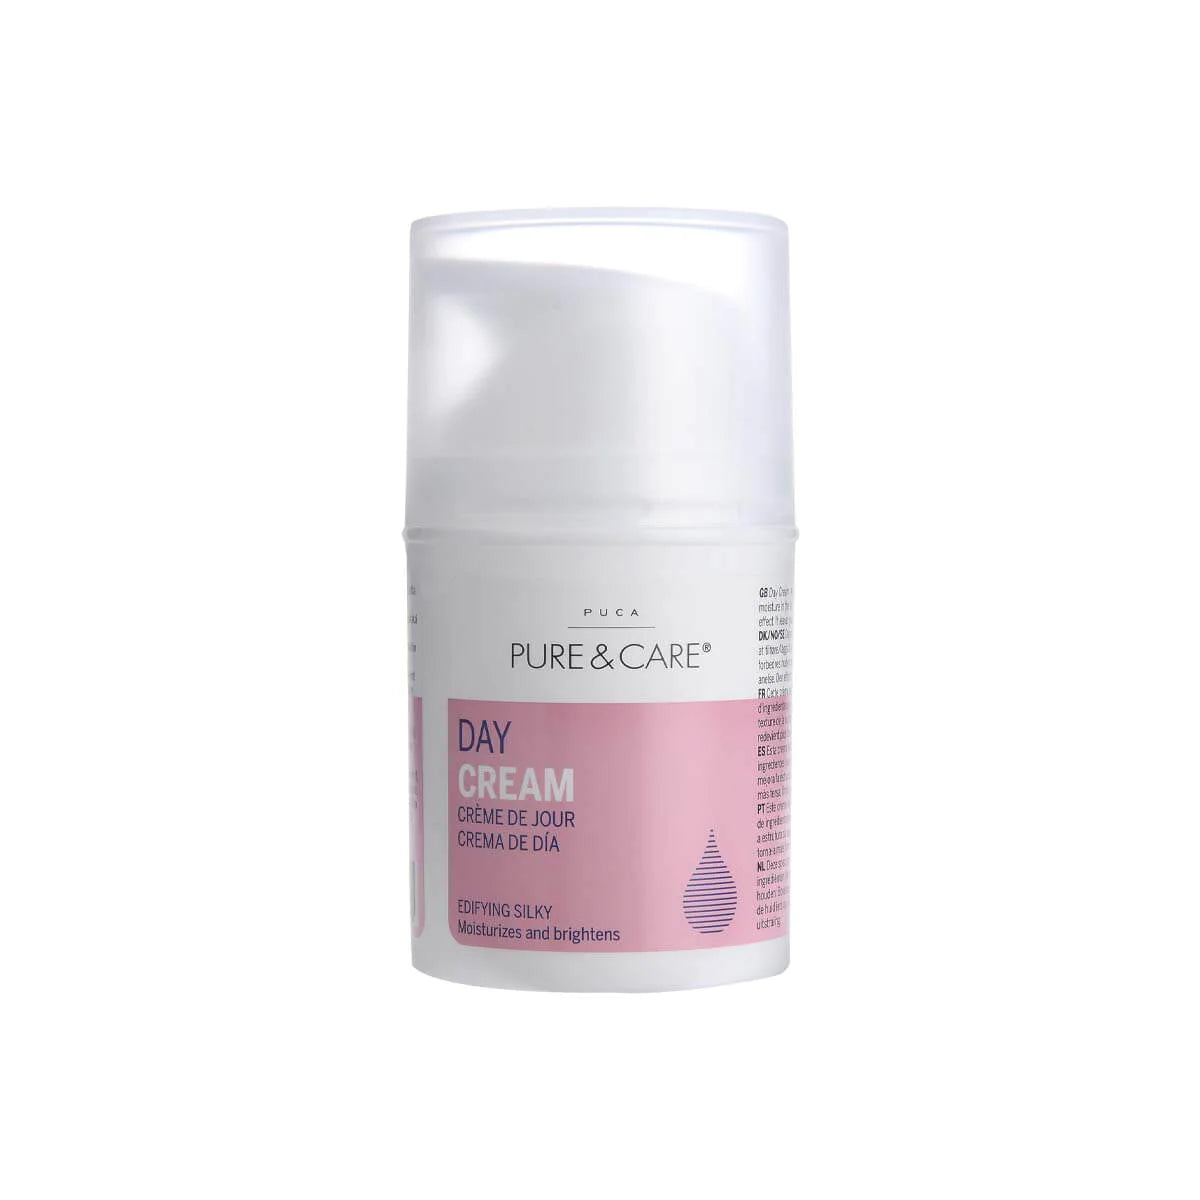 Day Cream - Soft Skin 50ml - Know To Glow